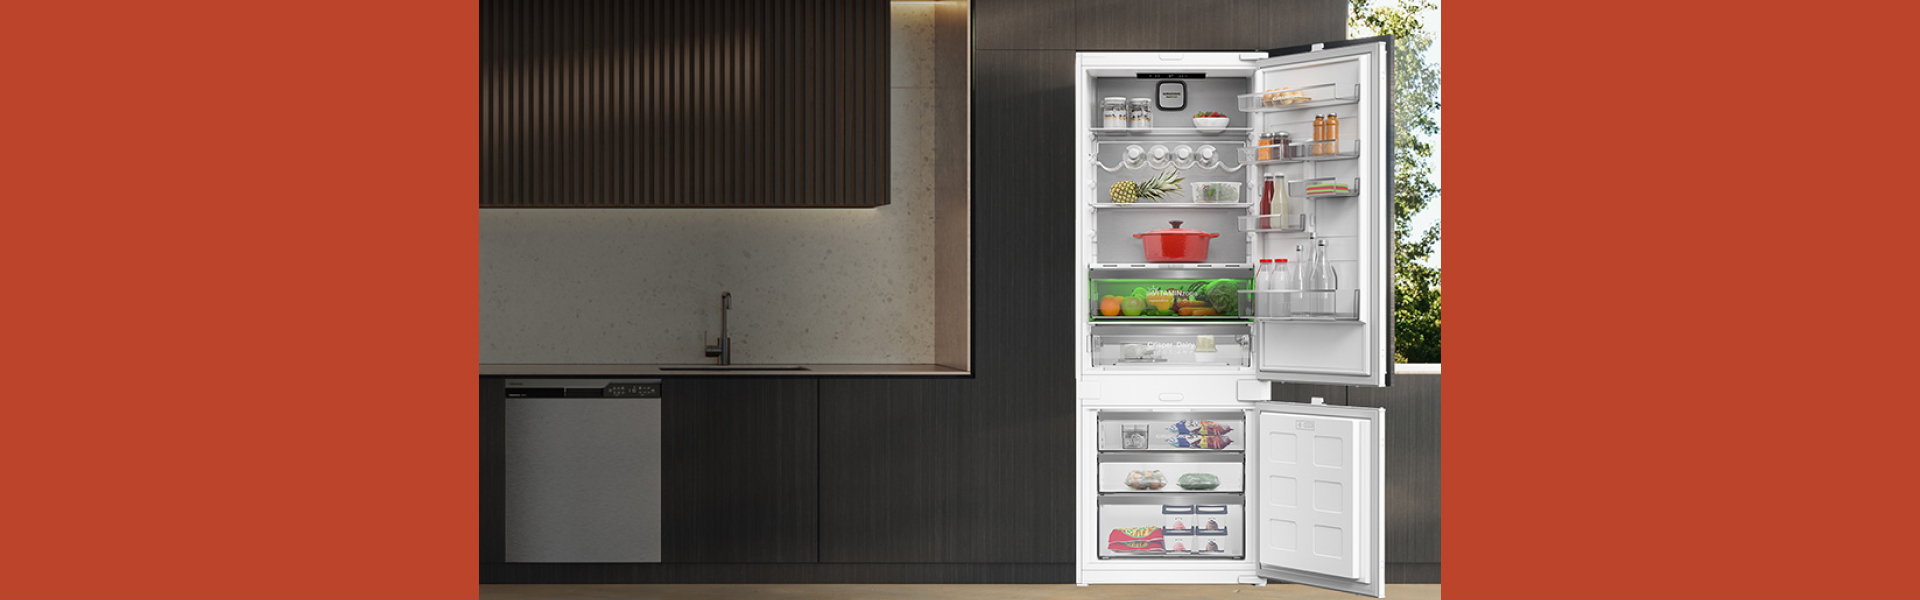 Grundig erweitert Einbau-Serie: flüsterleiser Kühlschrank mit viel Platz für Lebensmittel